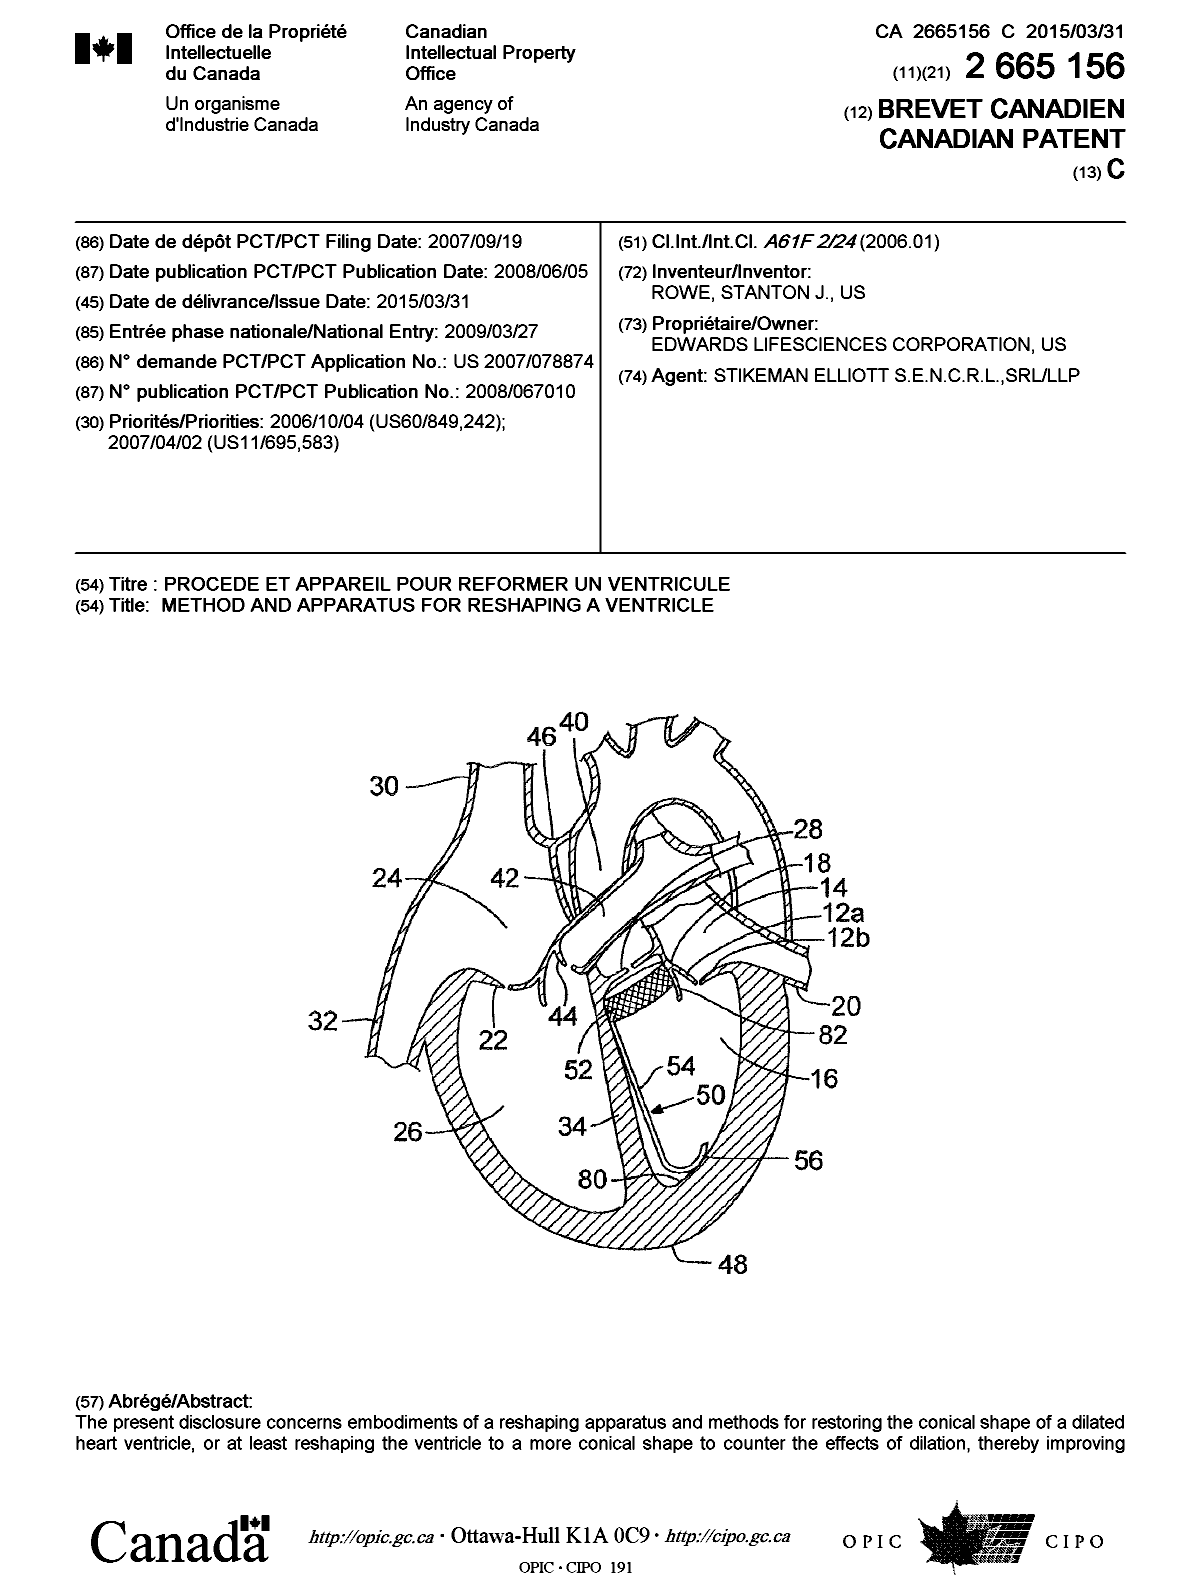 Document de brevet canadien 2665156. Page couverture 20150225. Image 1 de 2